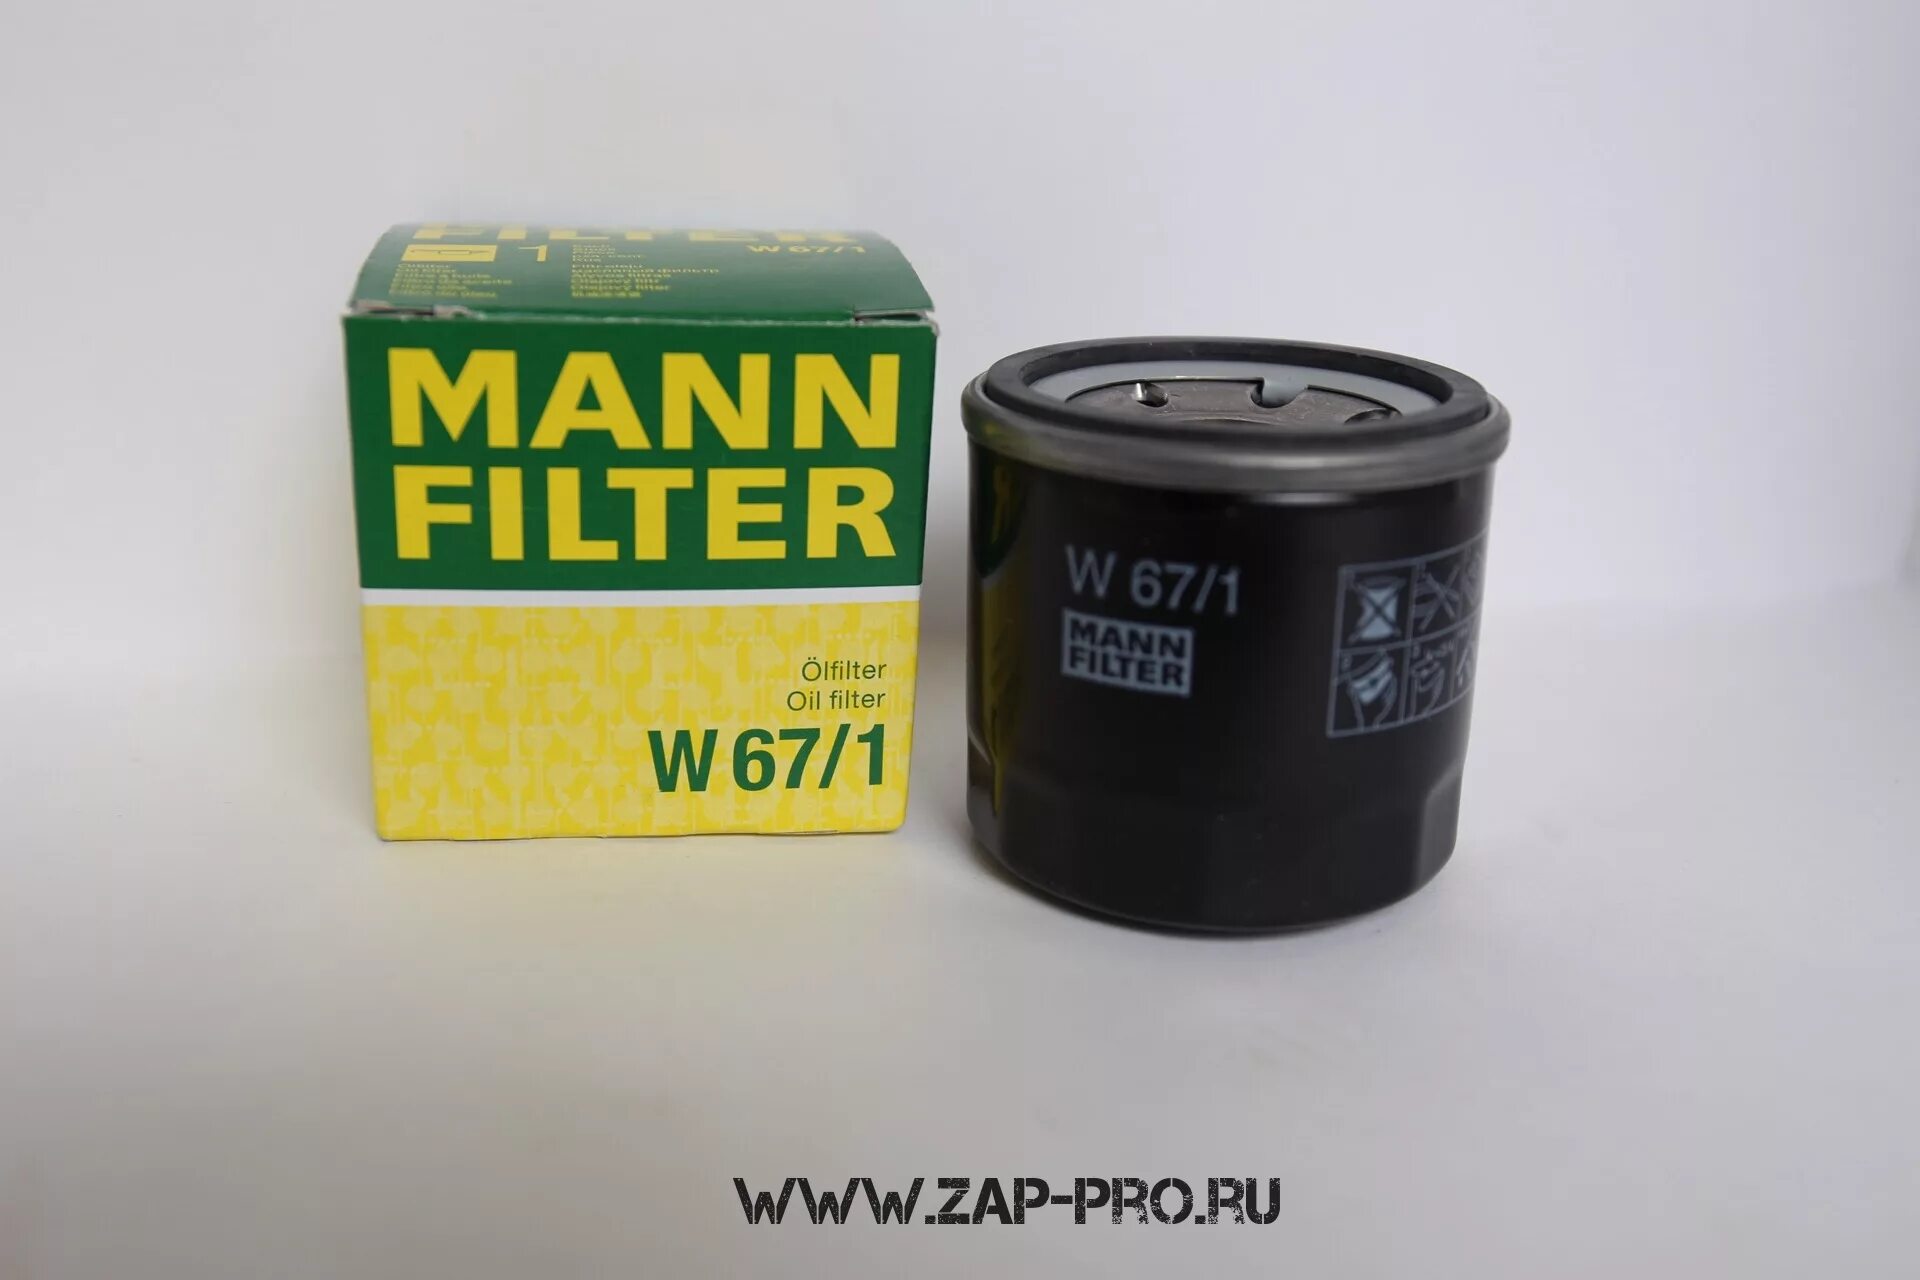 Масляный фильтр w67. Фильтр масляный Mann w671. Масляный фильтр Mann-Filter w 67/1. Масляный фильтр Манн 67/1. Mann масляный фильтр Mann w672.